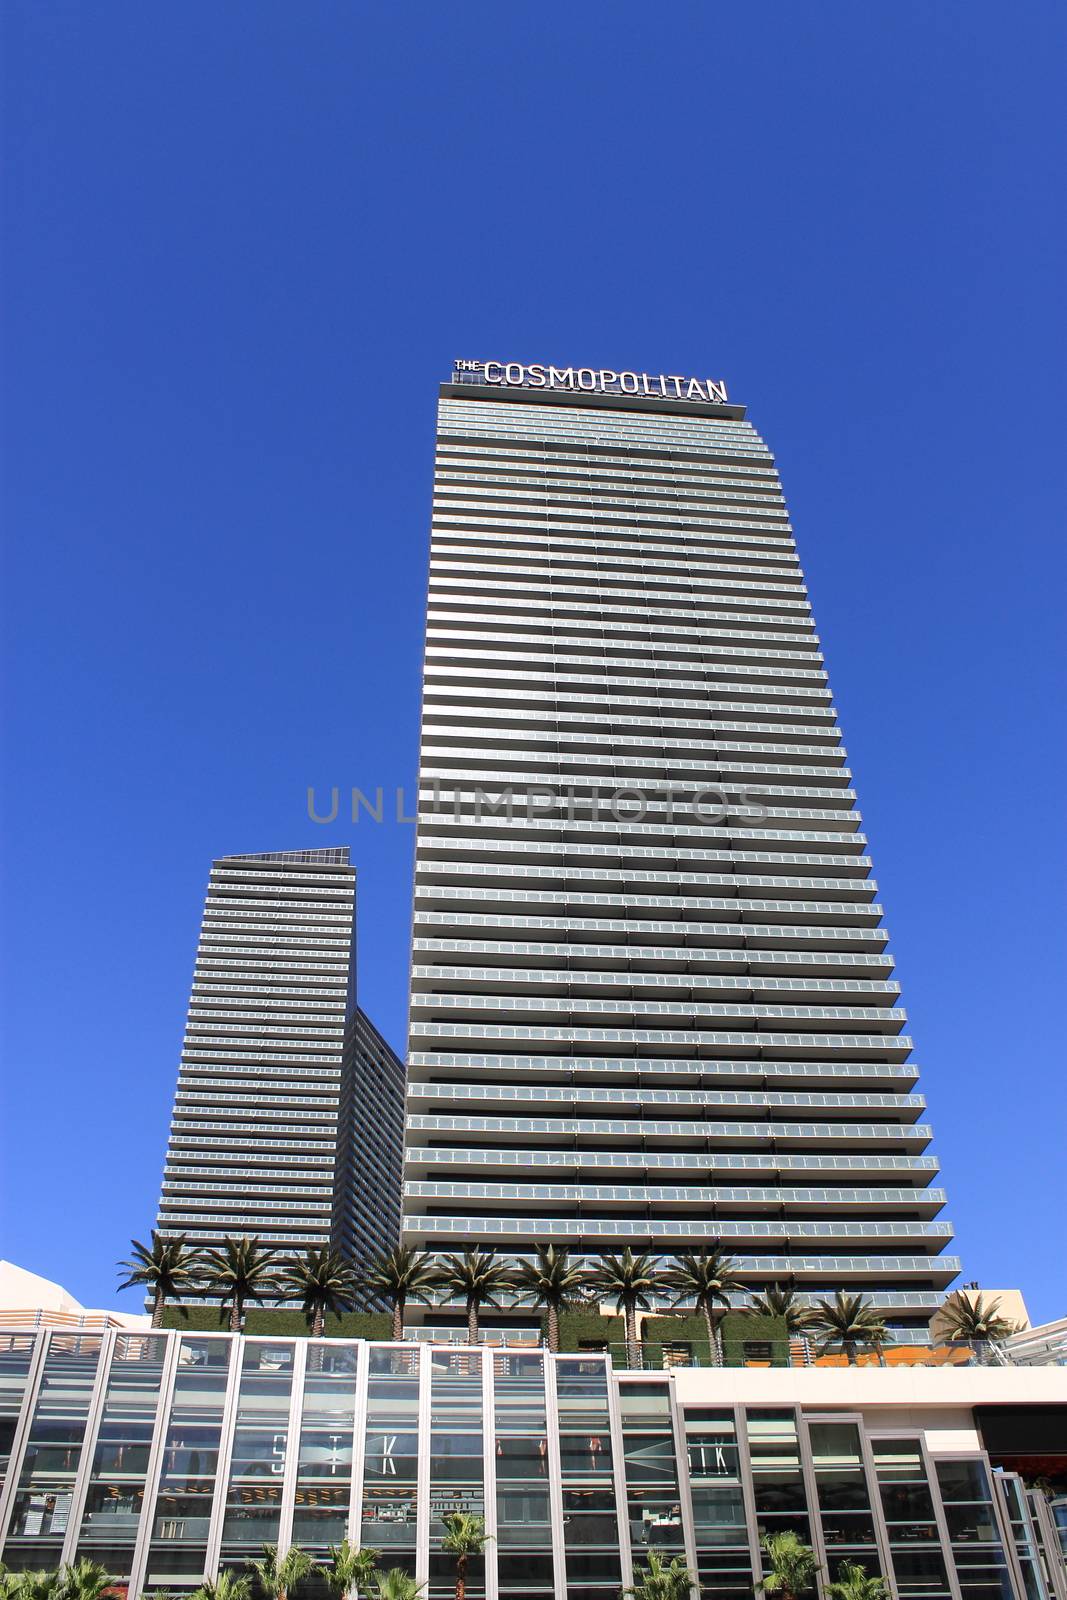 Las Vegas - Cosmopolitan Hotel by Ffooter